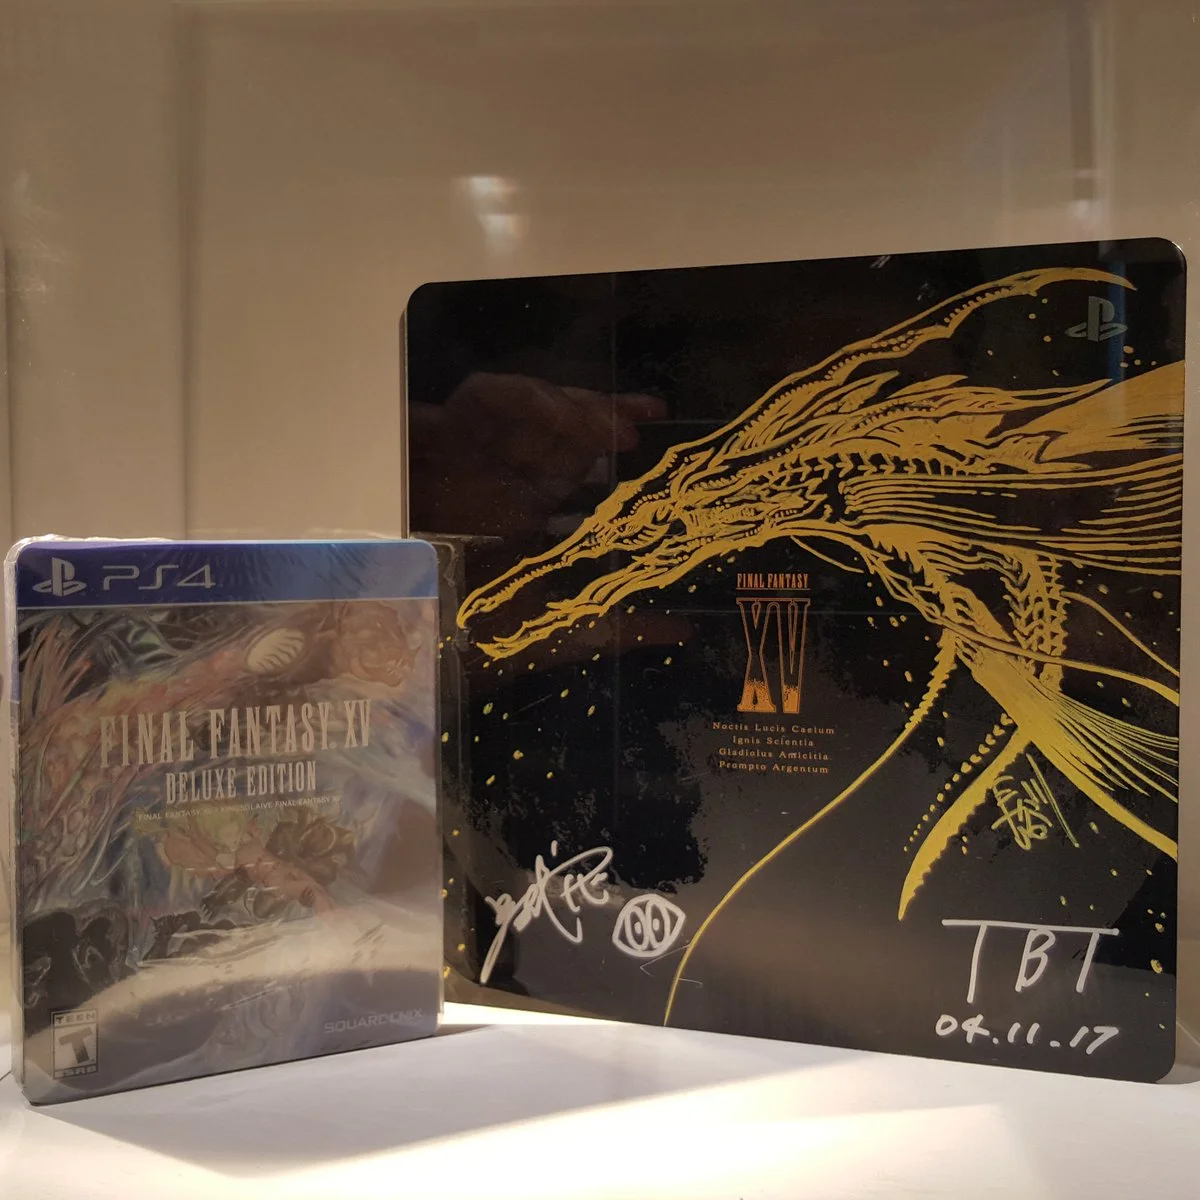  Sony PlayStation 4 Pro Final Fantasy XV 30th Anniversary Console